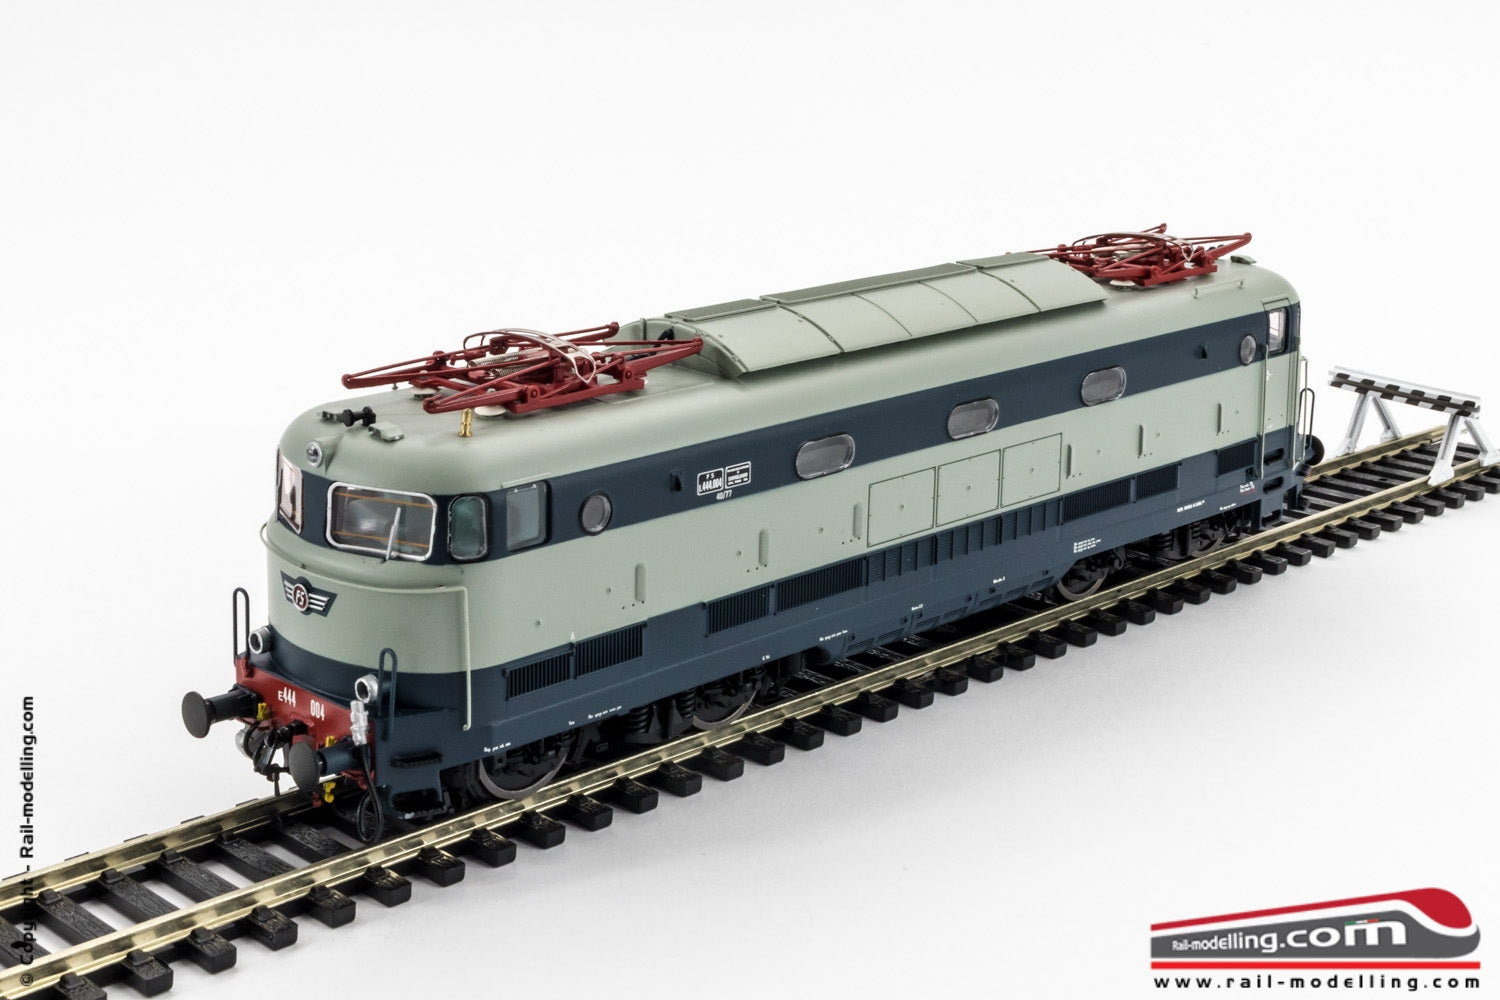 ACME 60106 - H0 1:87 - Locomotiva elettrica FS E 444 004 livrea origine ricostruita ep. IV V